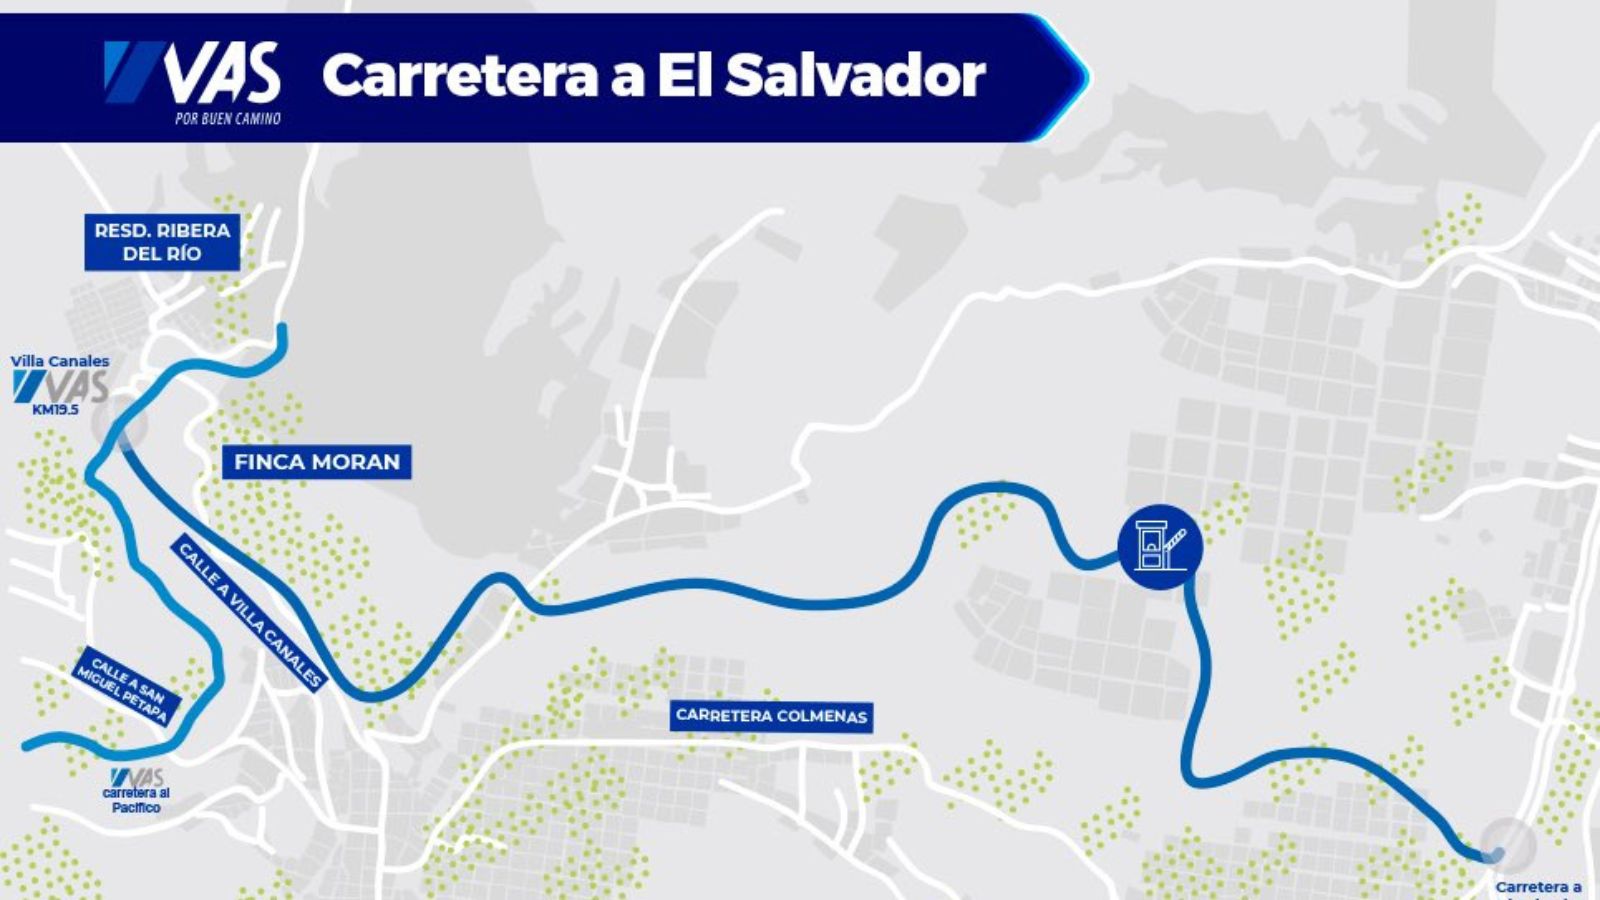 VAS carretera a El Salvador conectará con ruta al Pacífico